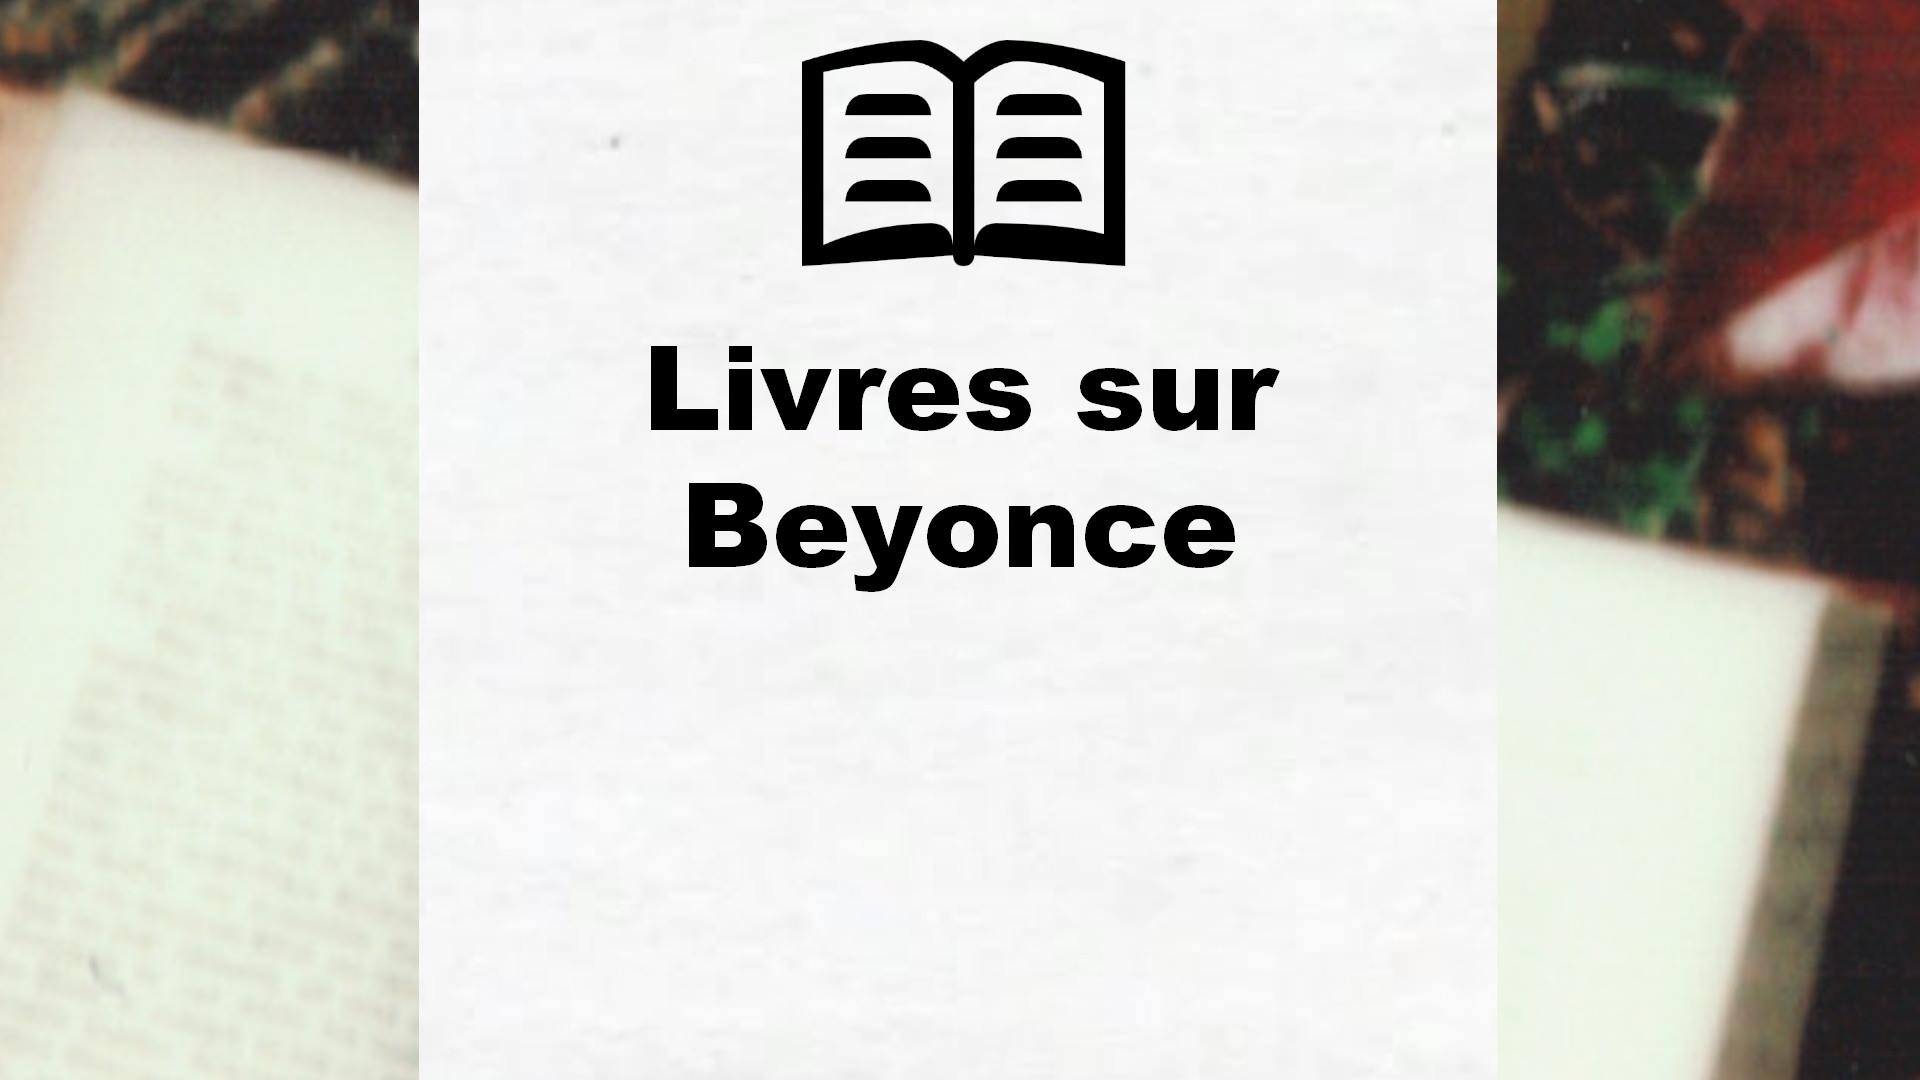 Livres sur Beyonce